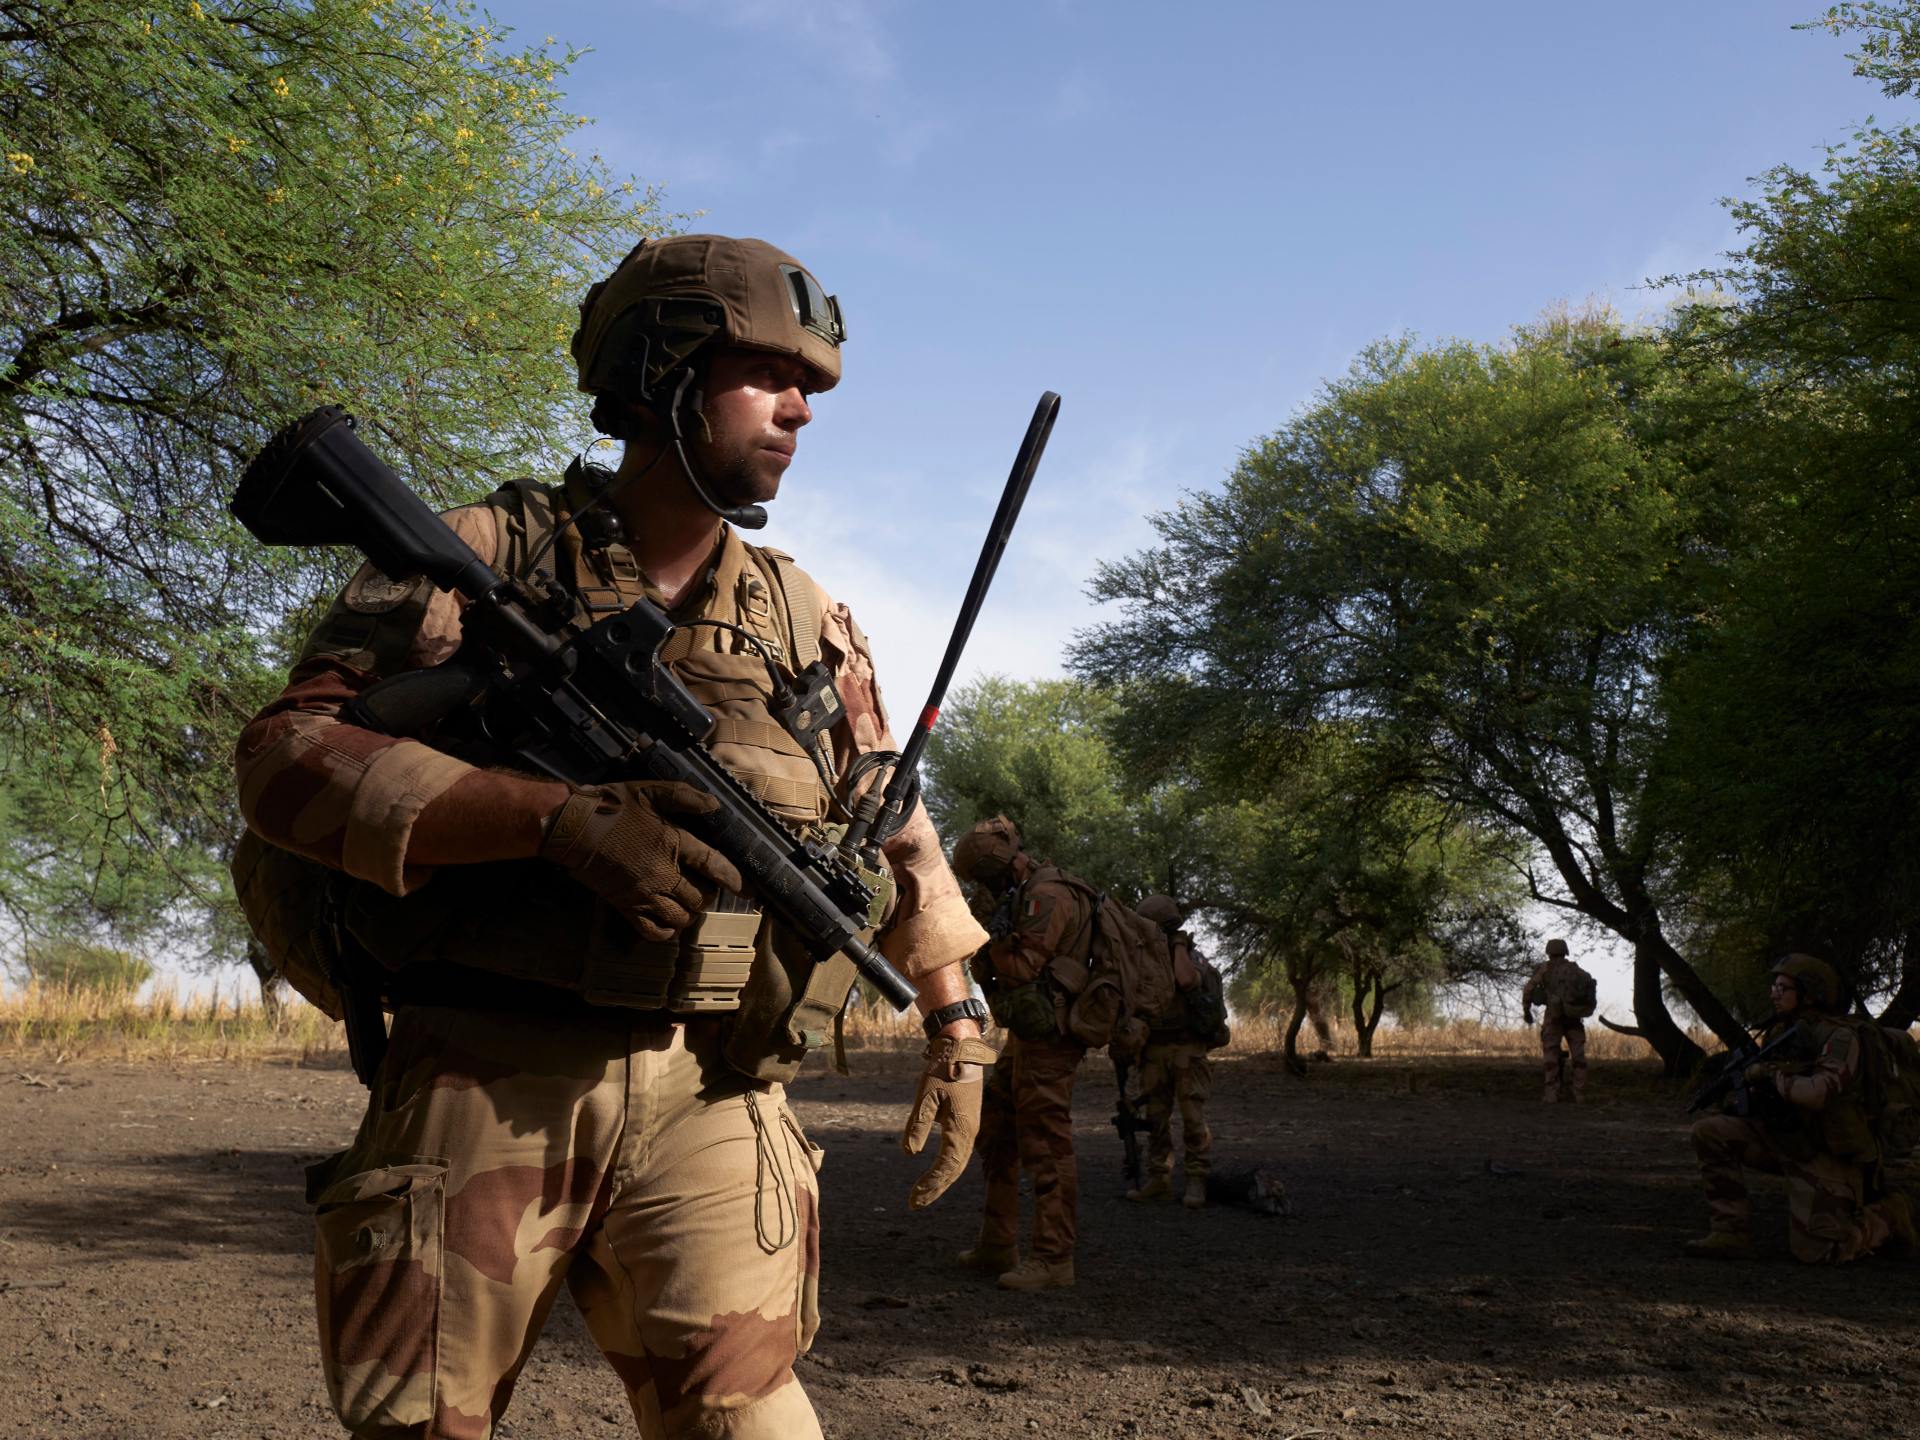 Politologue : Il est grand temps de s’interroger sur la présence militaire française en Afrique |  politique